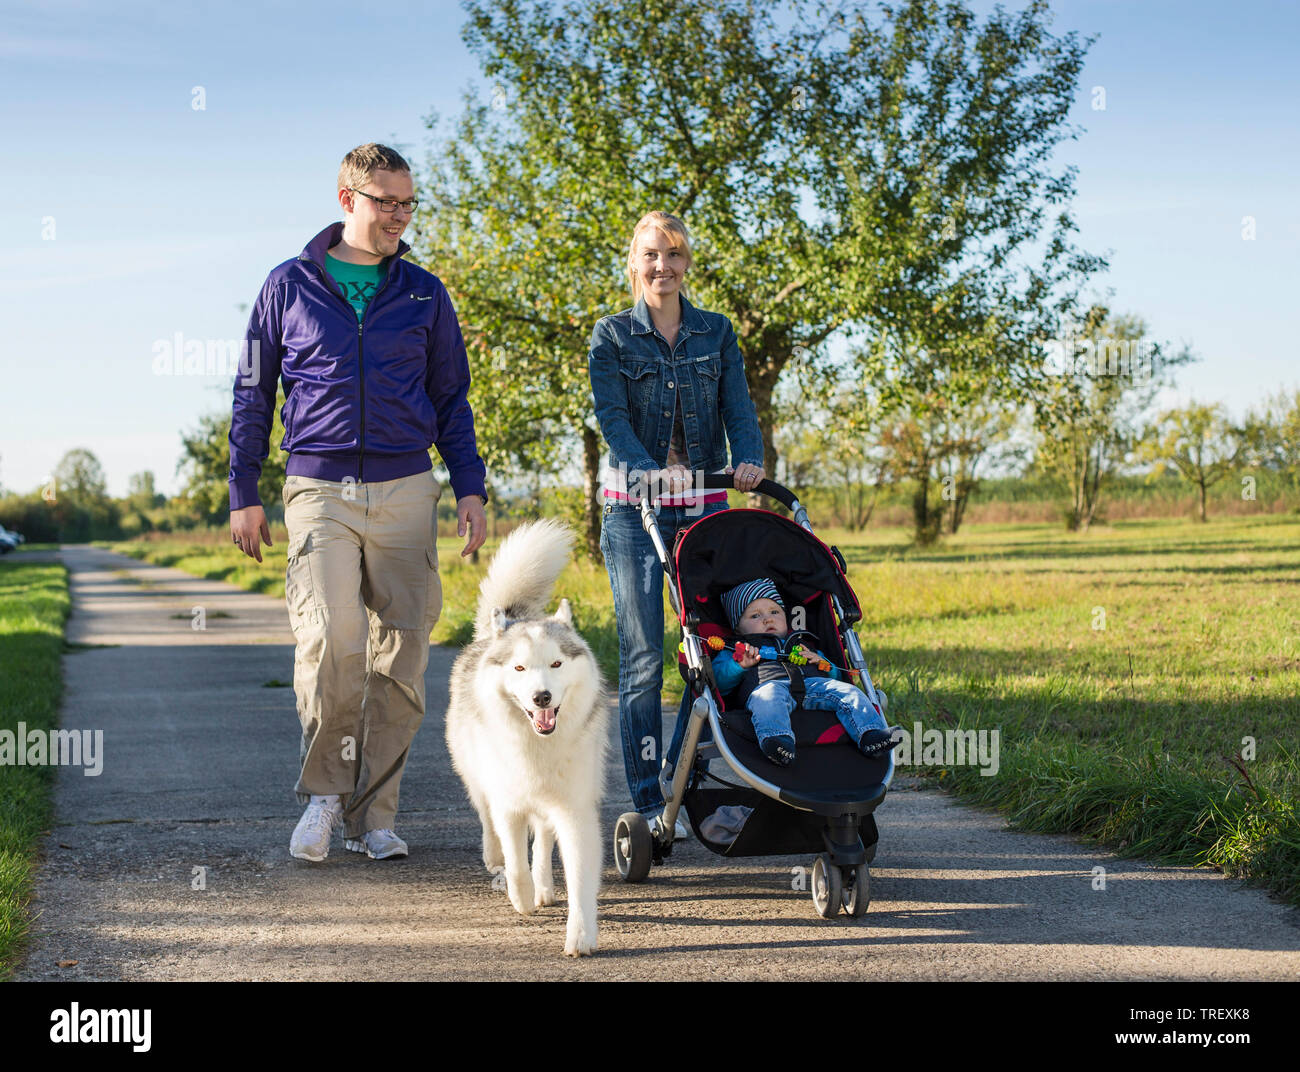 Husky de Sibérie. Chien adulte sur une marche avec sa famille humaine Allemagne Banque D'Images